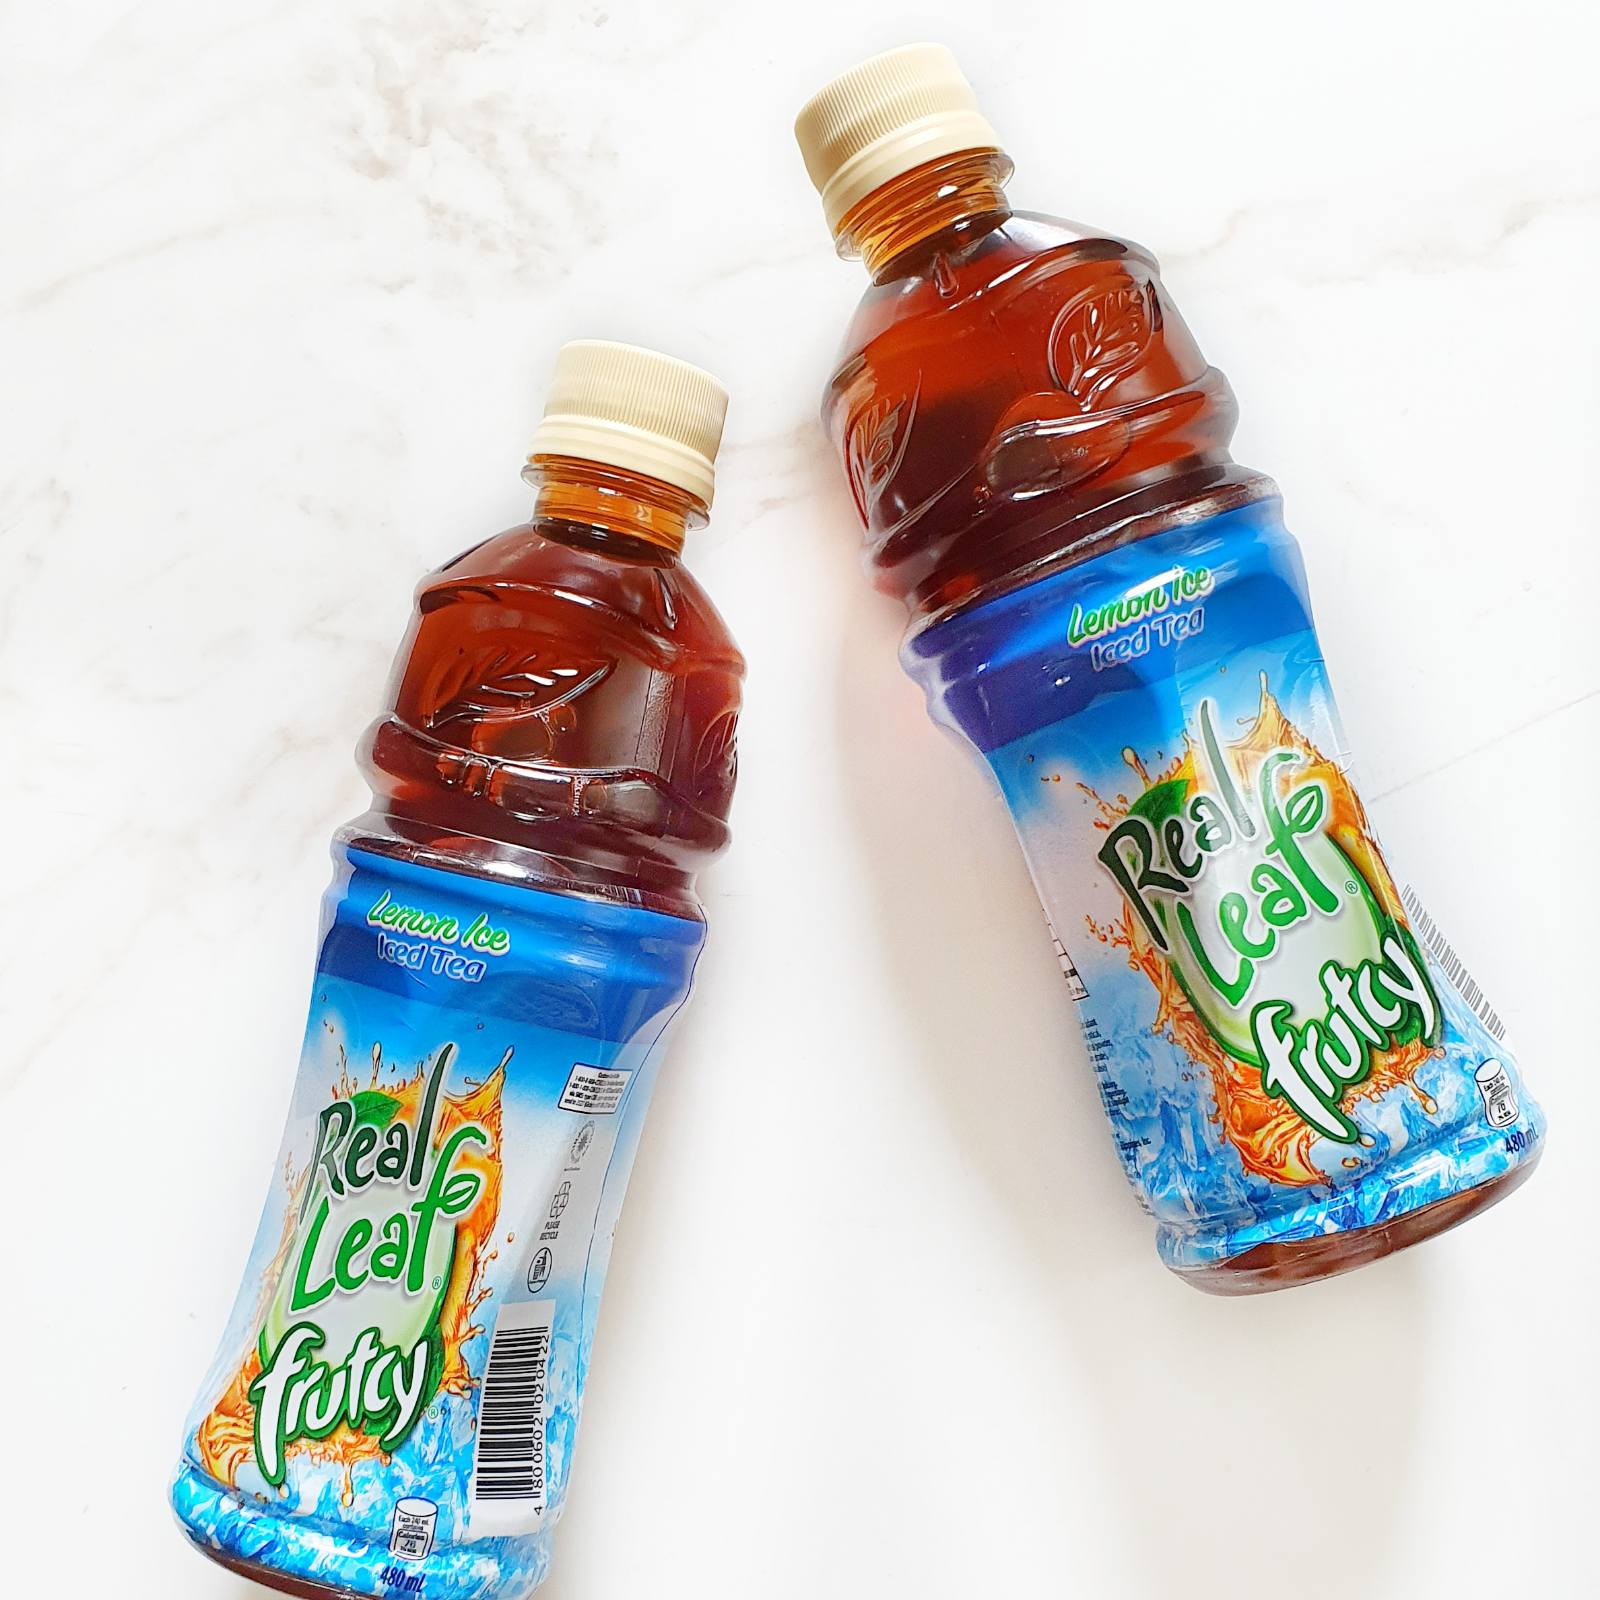 Real Leaf Ice Tea (Lemon, Apple, Calamansi)